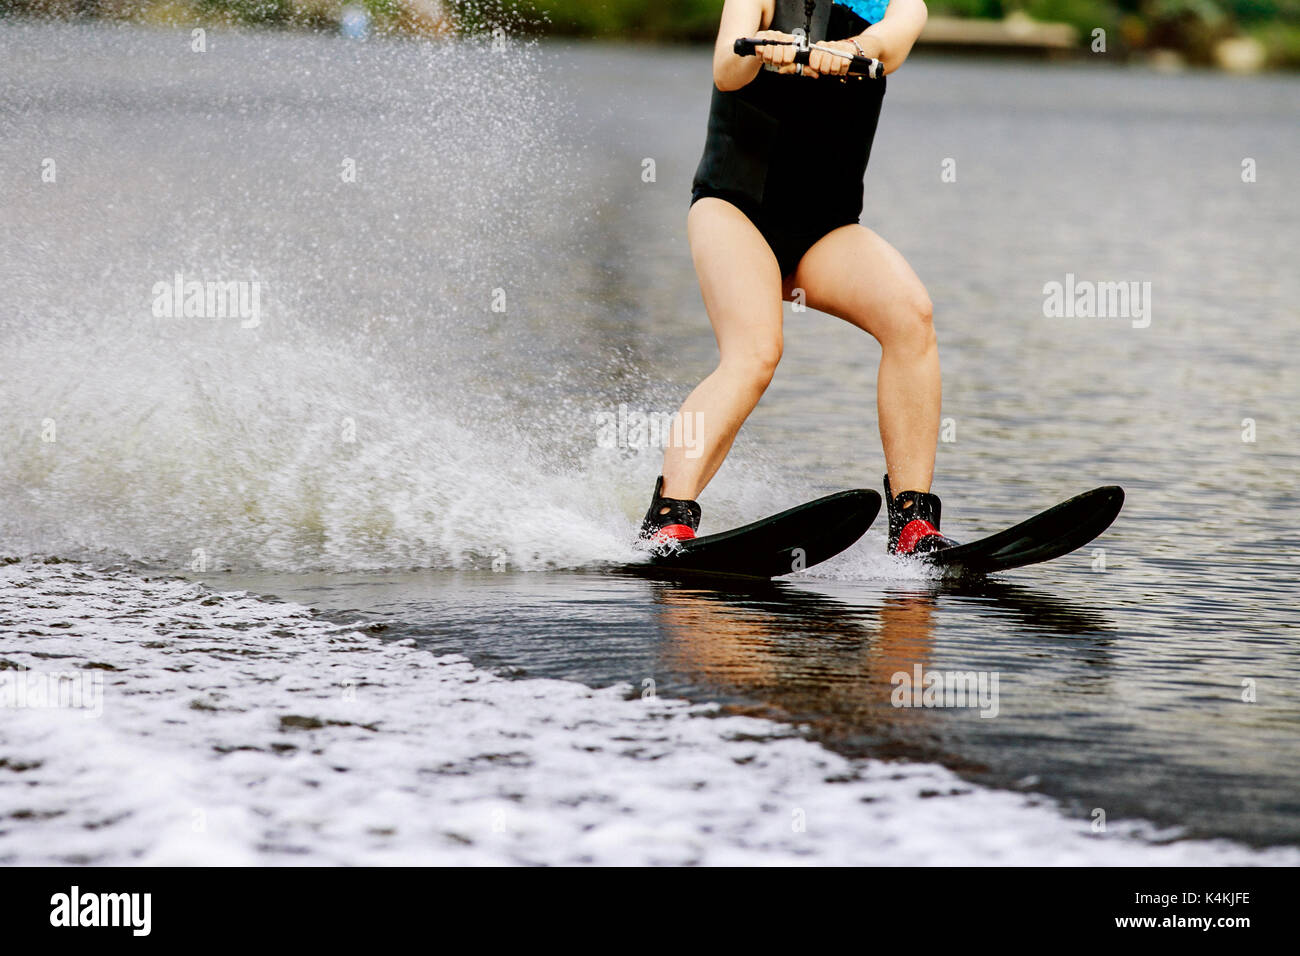 Junge Frau auf dem Wasser ski Fahrten auf See Wasser sprühen Stockfoto